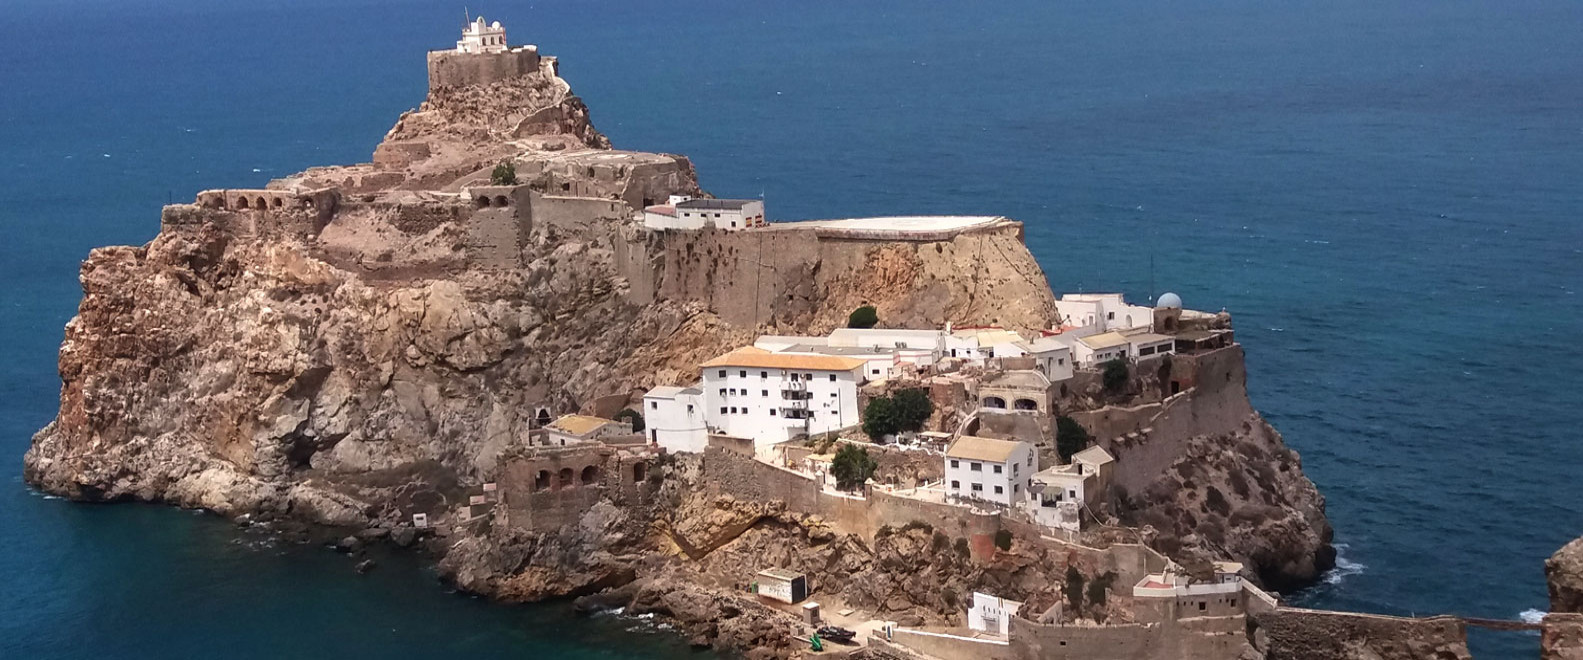 Al Hoceima A Dream Destination In The Mediterranean Sea Moroccan National Tourist Office